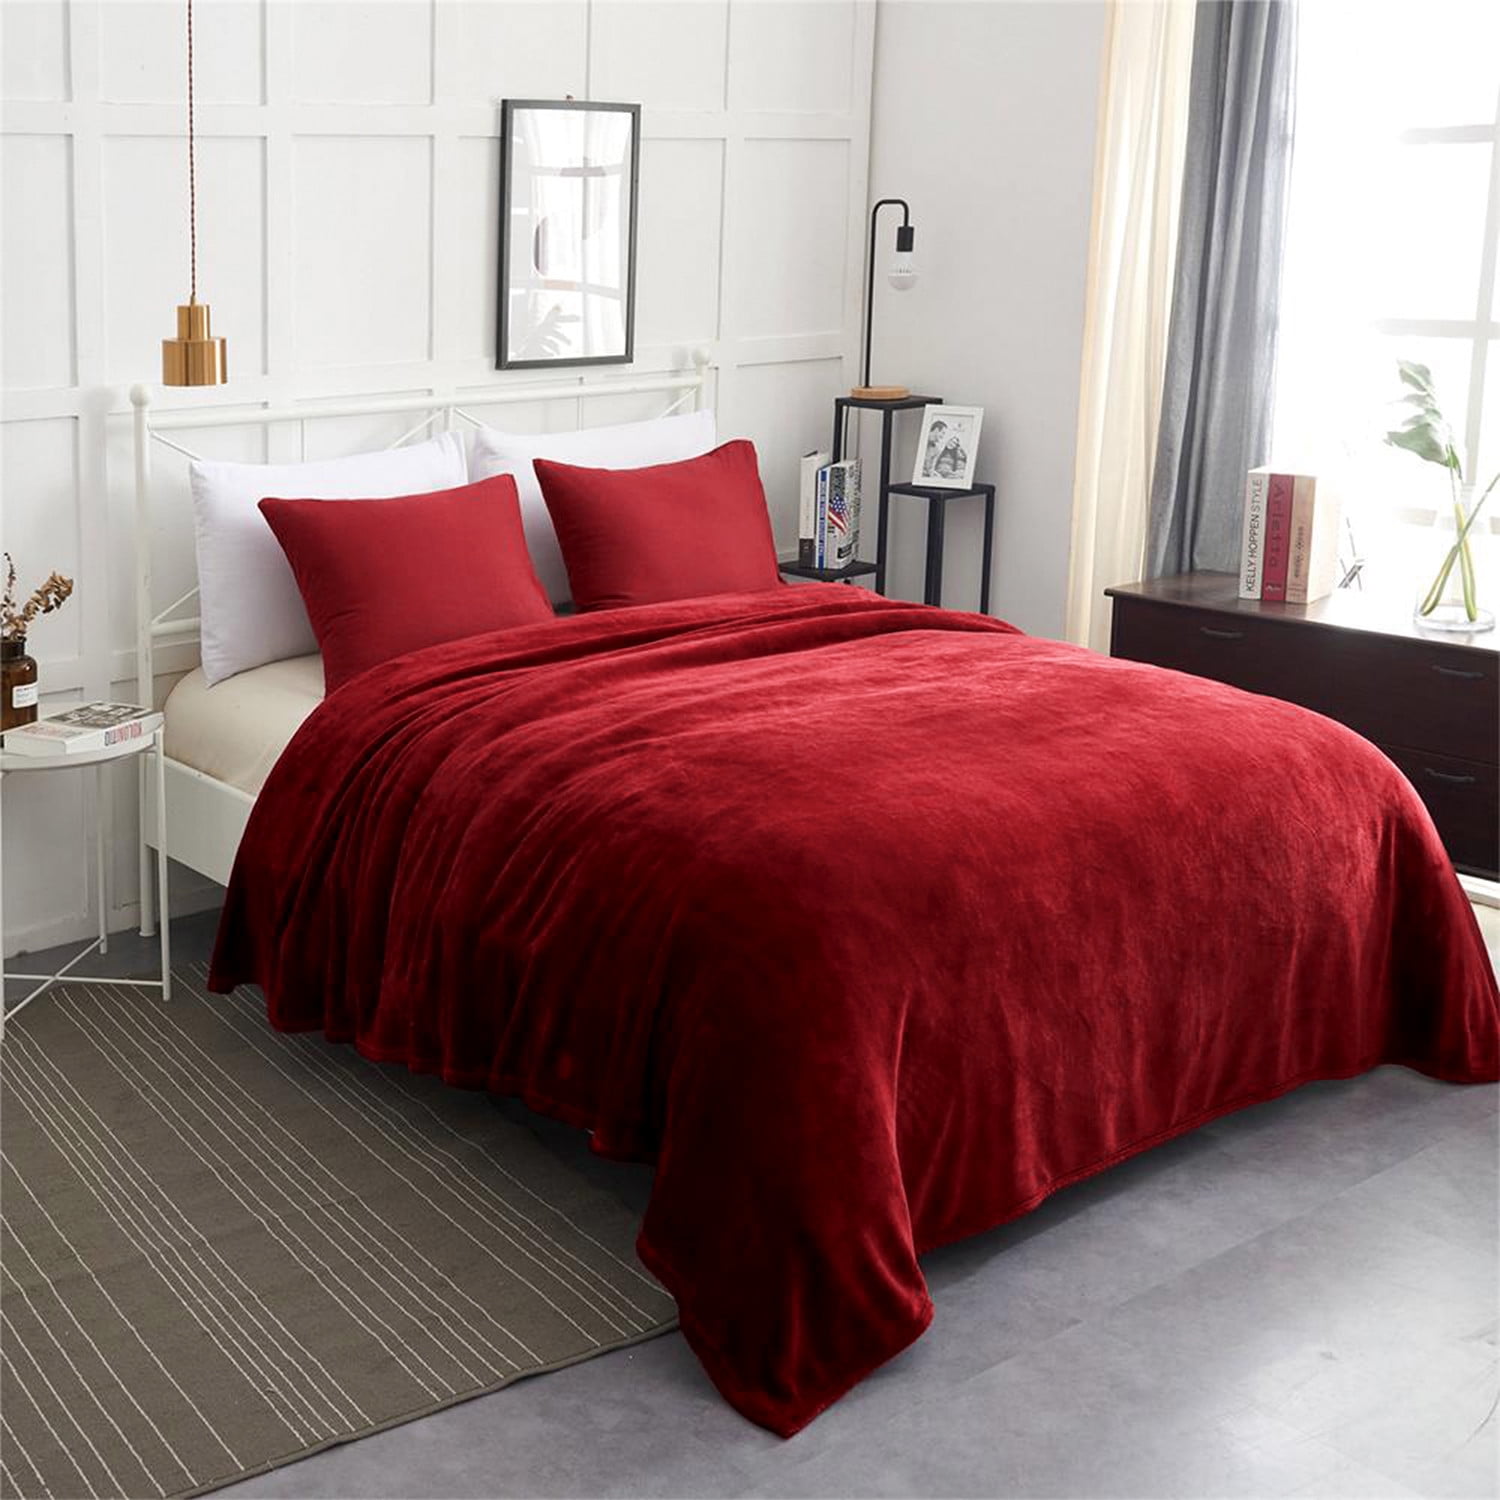 Solid Burgundy Blanket Bedding Throw Flannel Full Queen Super Soft  Dark Red 